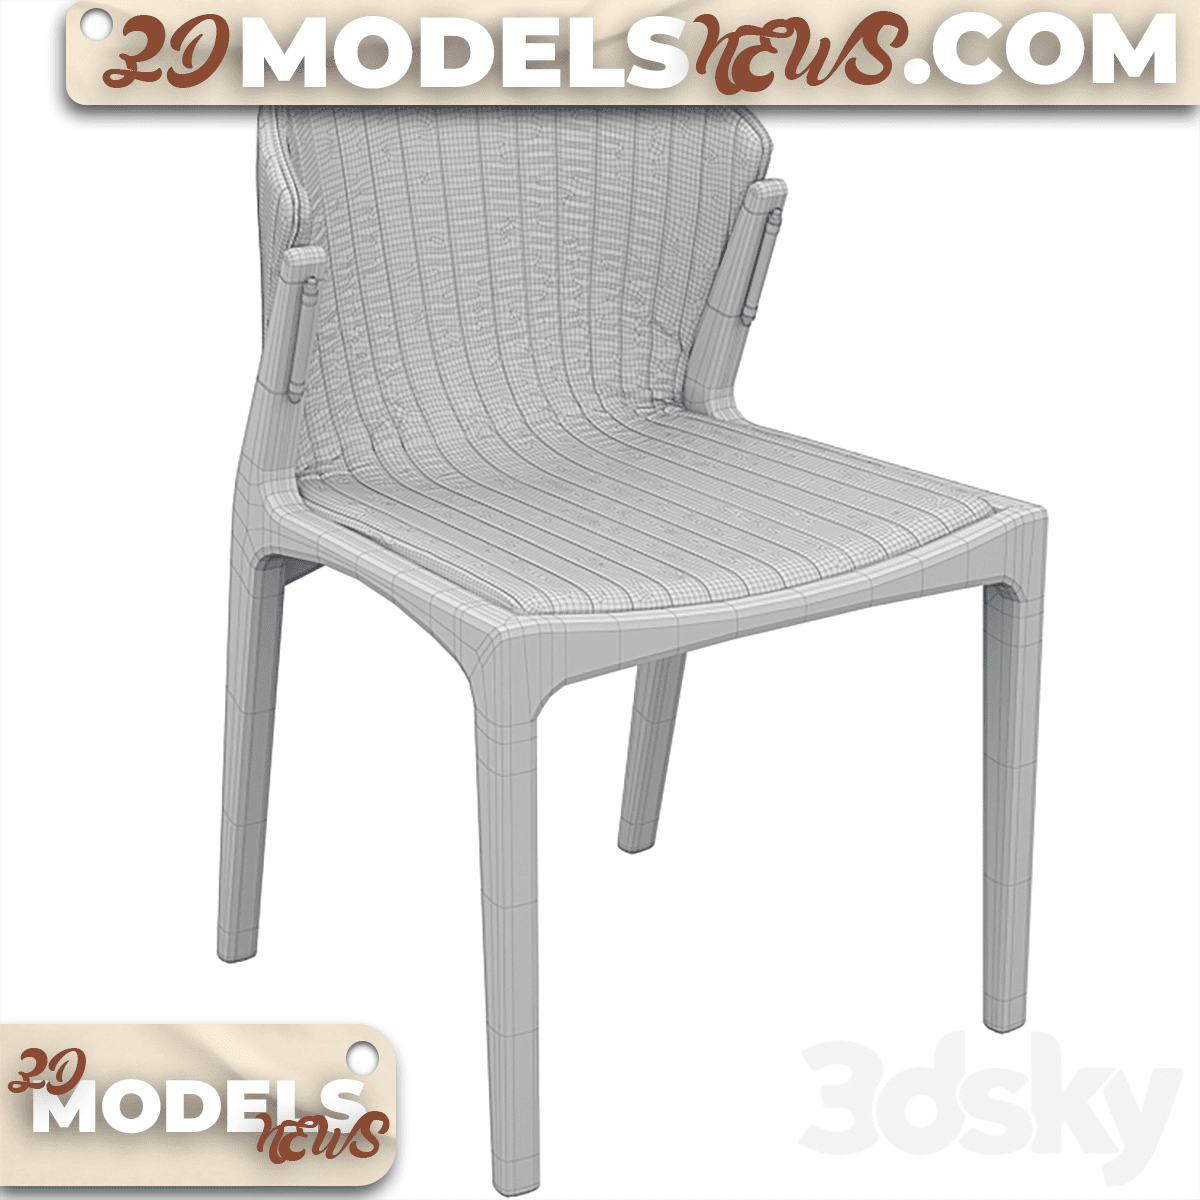 Luisa Chair Model By Estudiobola 5